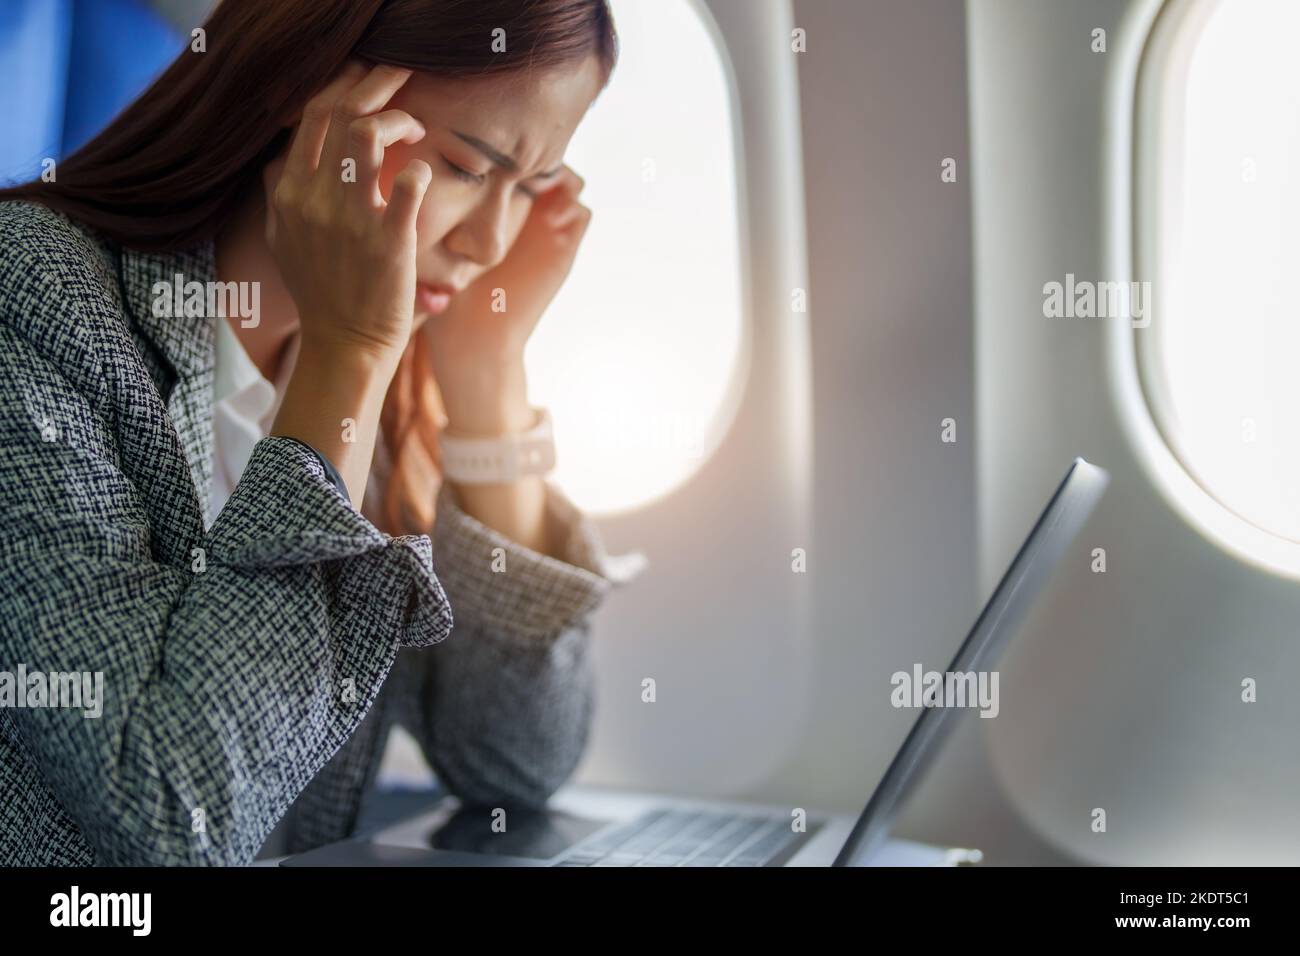 Le portrait d'une femme d'affaires ou d'un entrepreneur asiatique réussi en costume formel sur un avion assis en classe affaires montre un réfléchi et stressé Banque D'Images